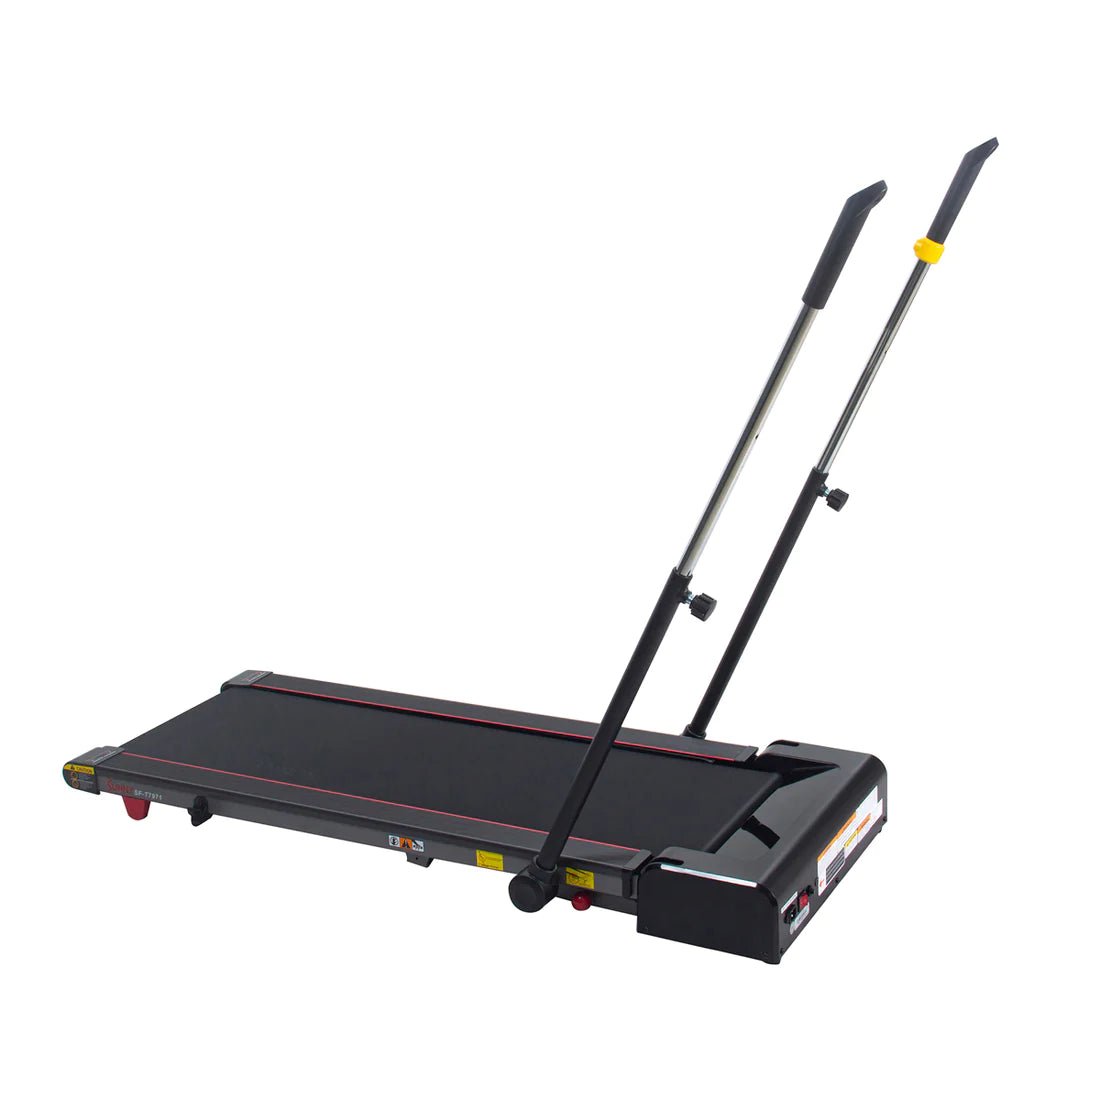 Sunny Health & Fitness Slim Folding Treadmill Trekpad - WellMed Supply